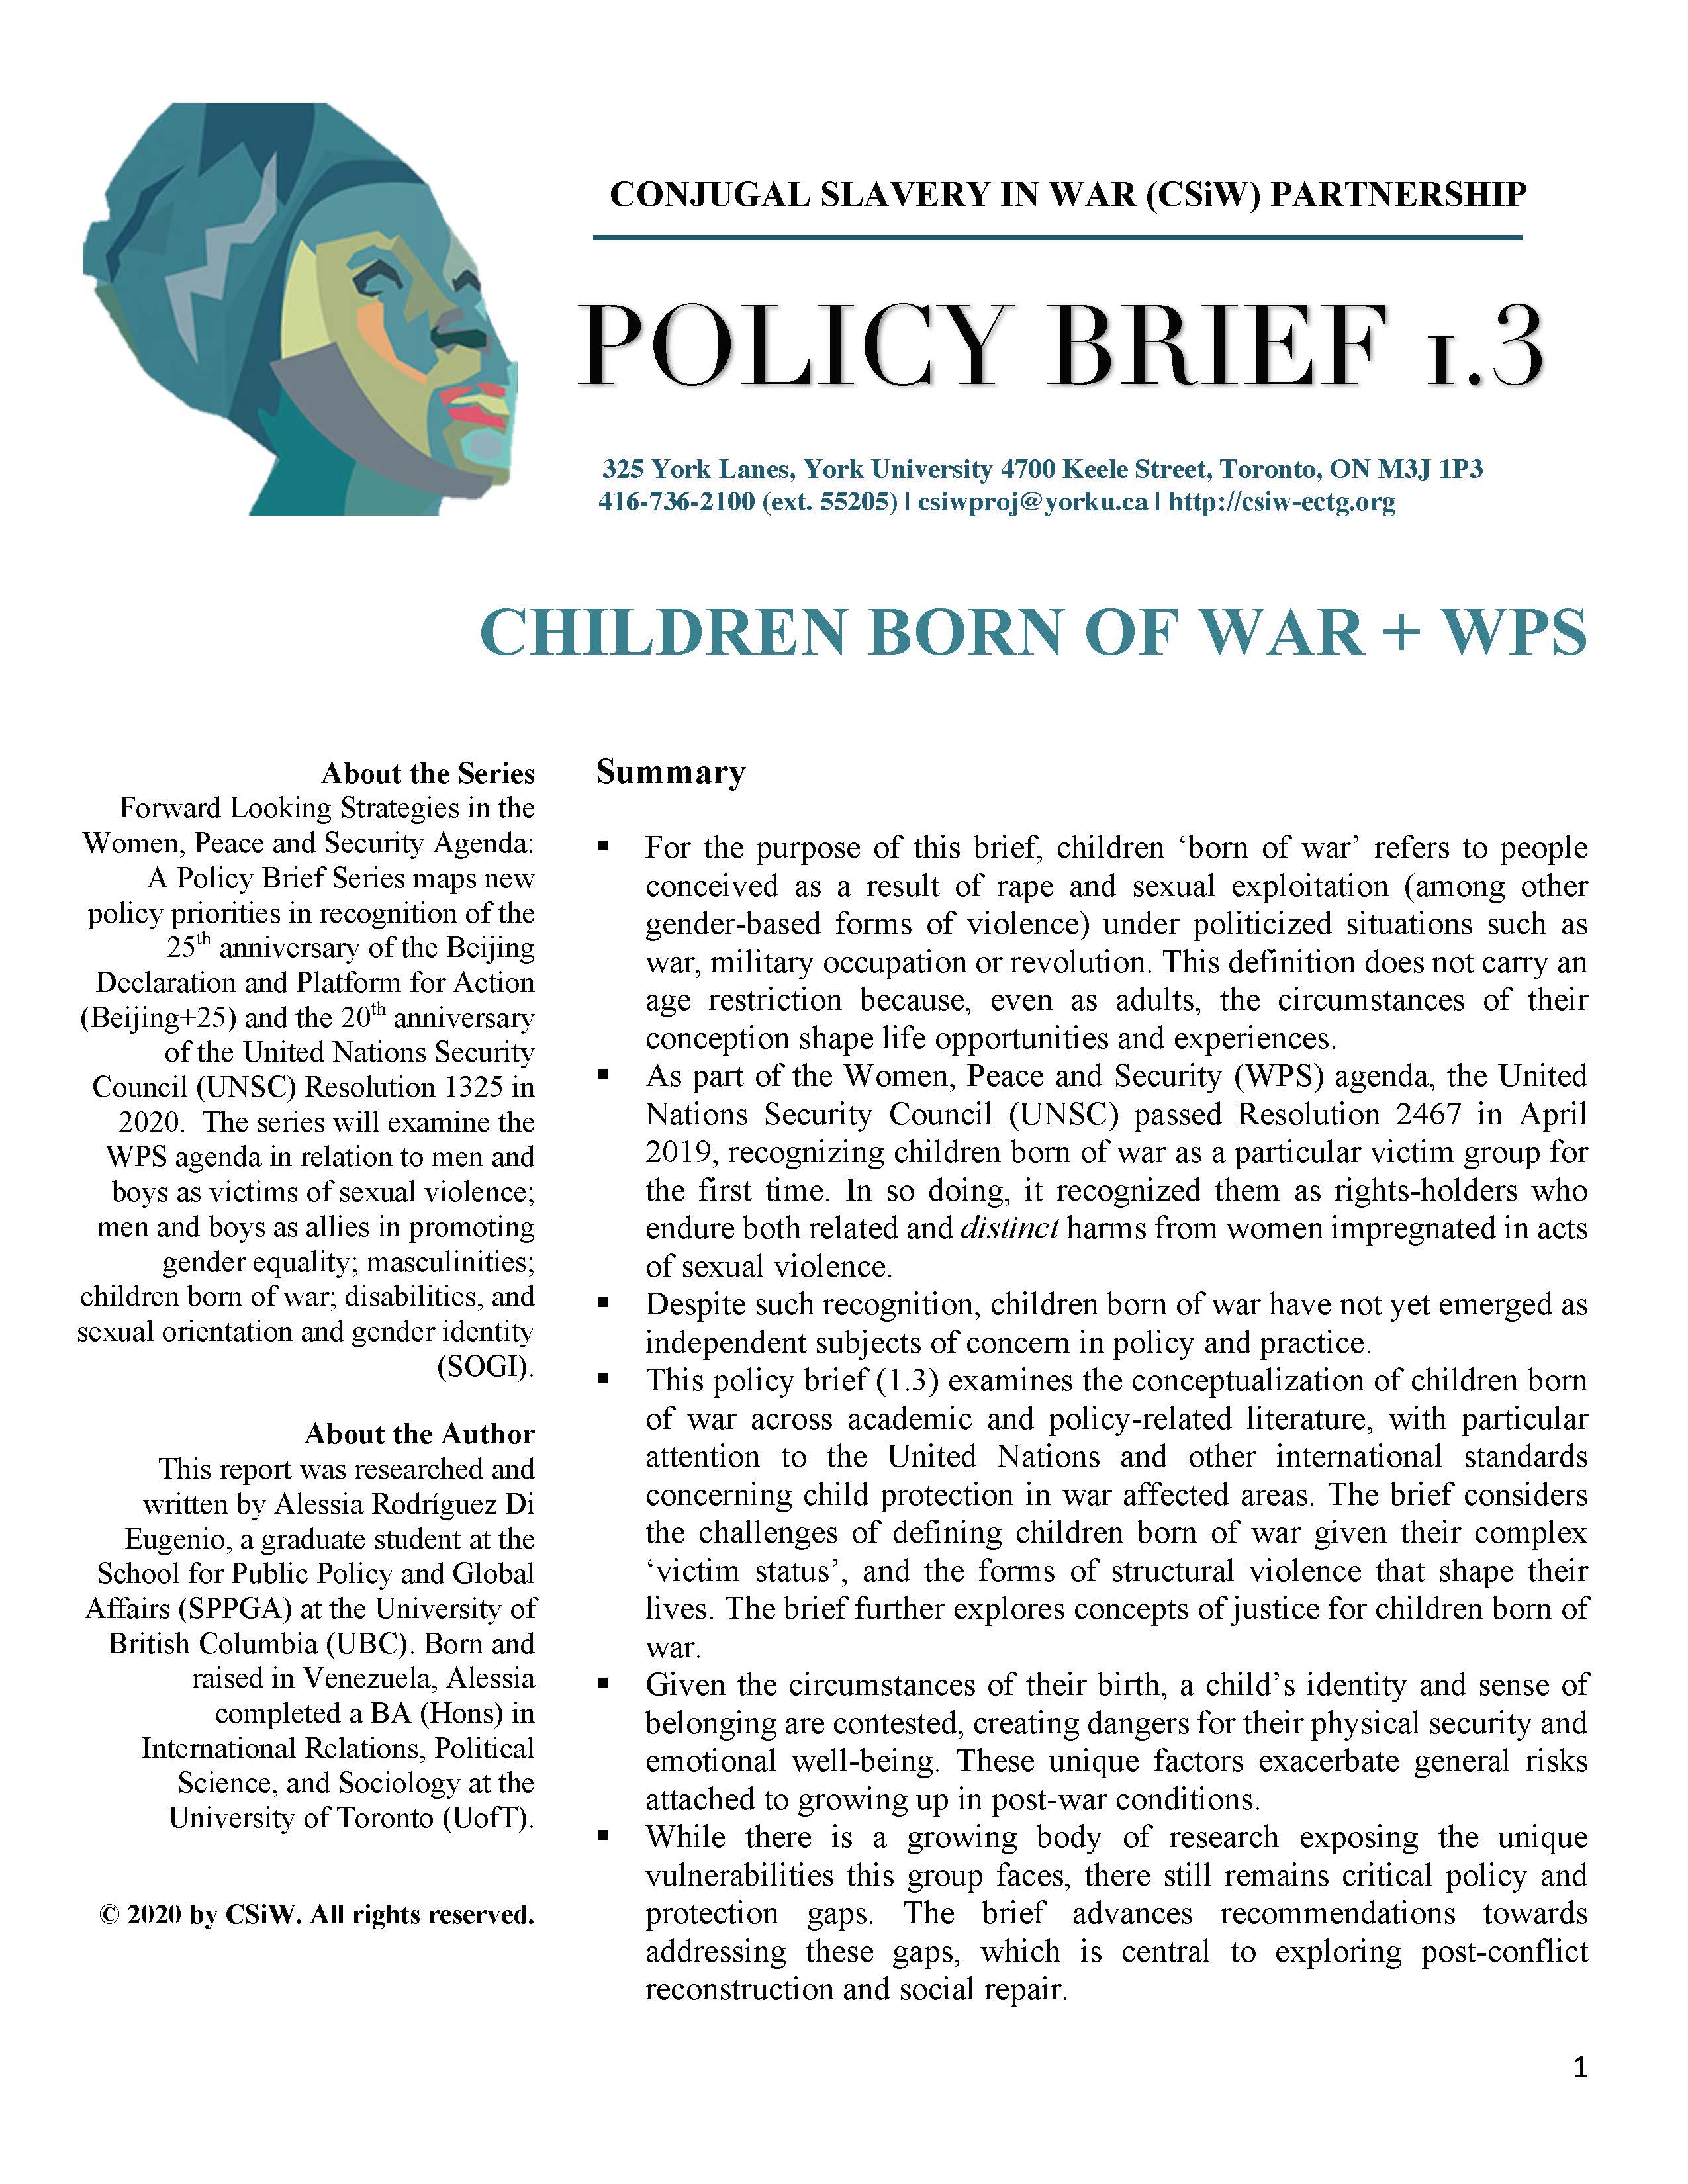 Policy Brief 1.3. Children Born of War + WPS